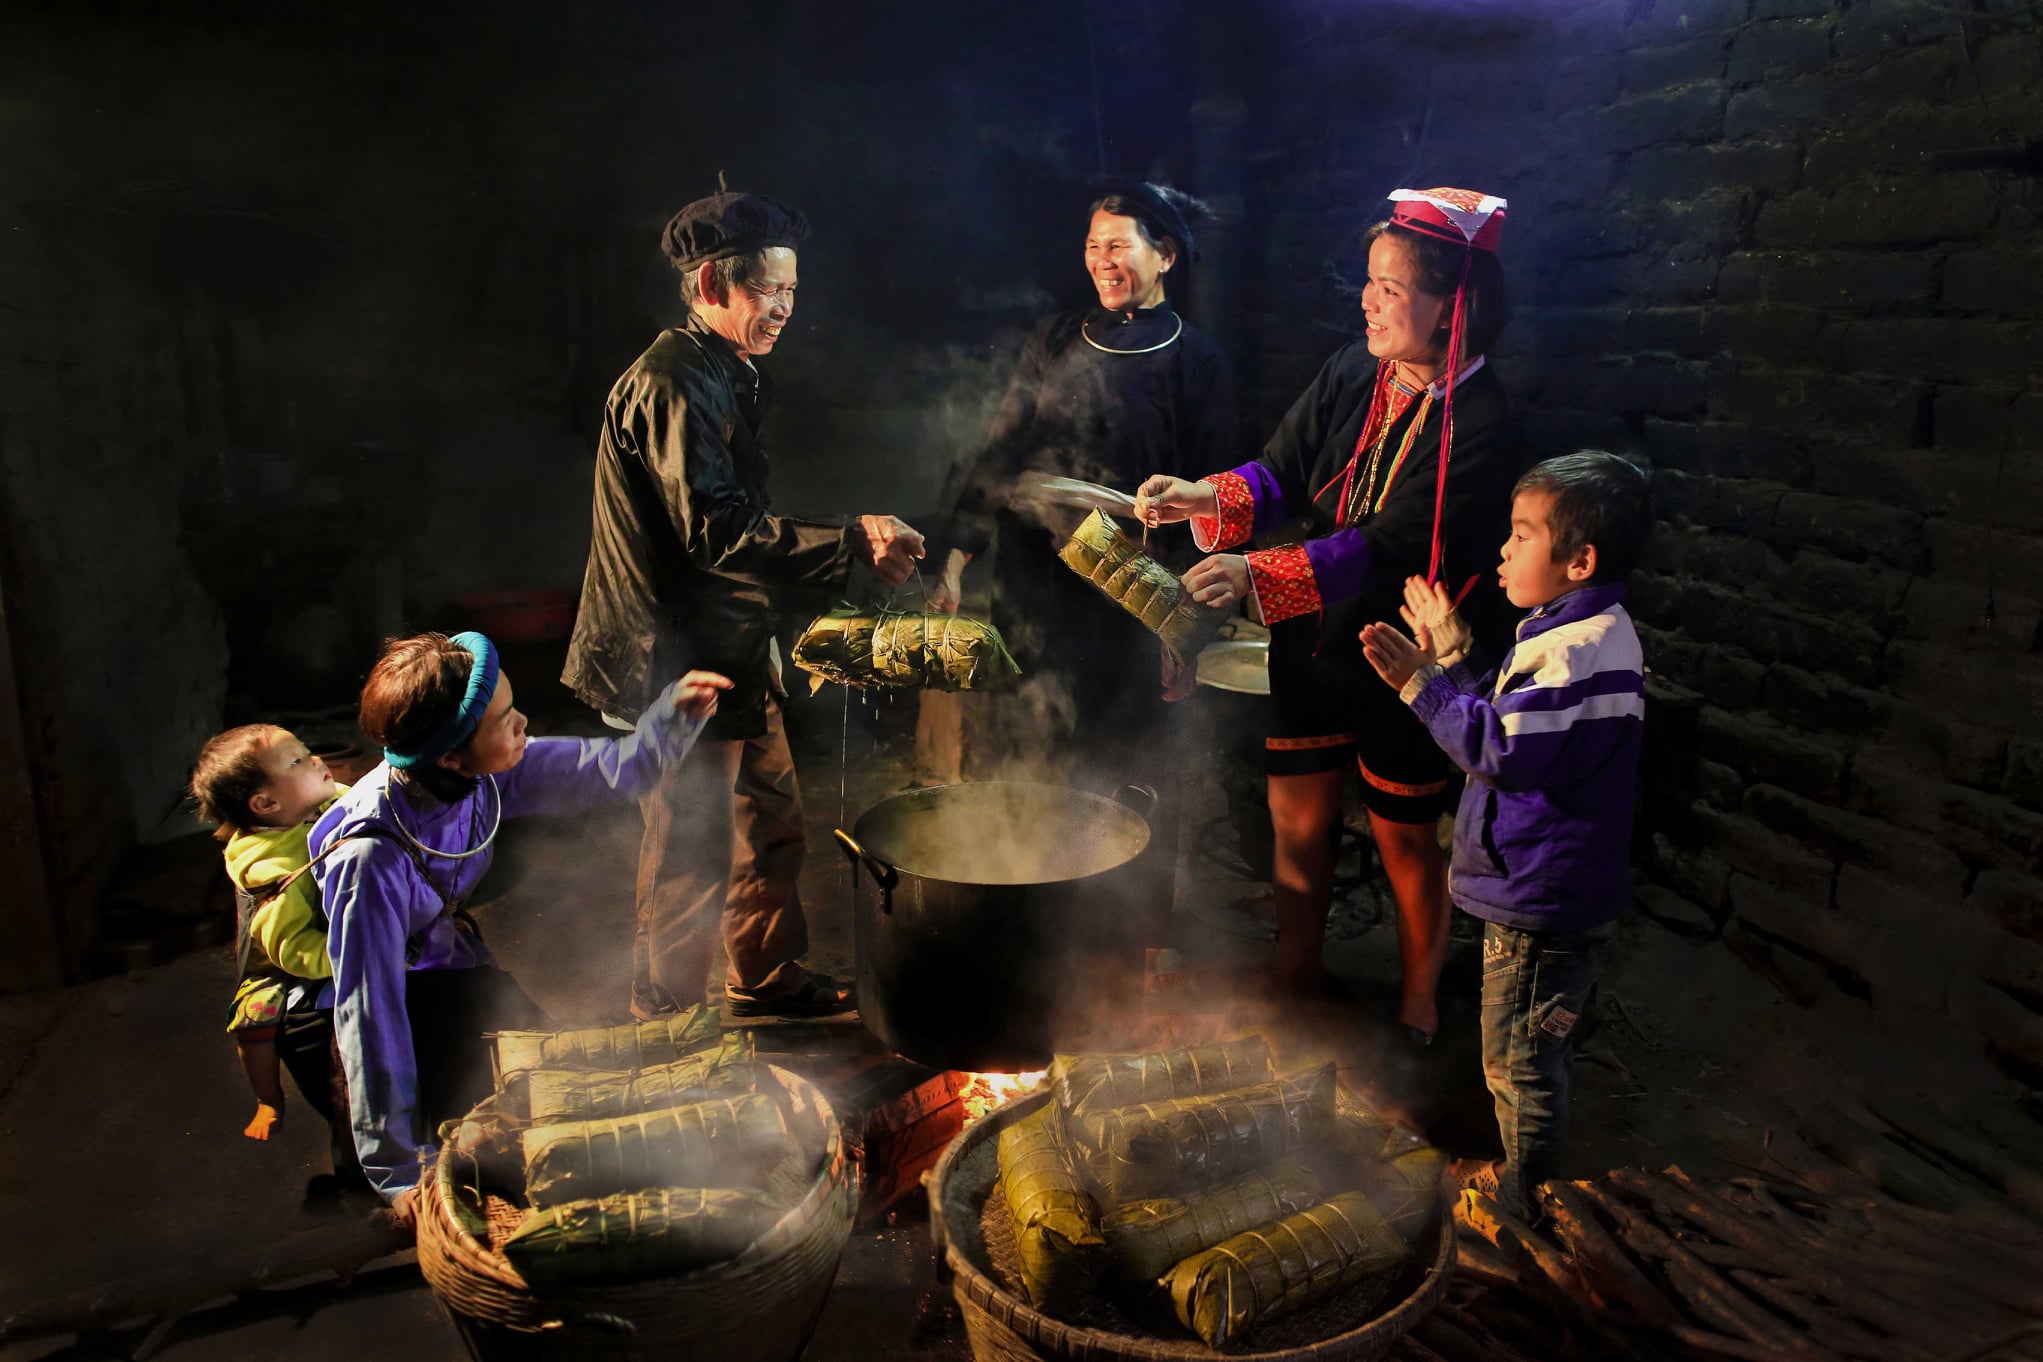 Đồng bào các dân tộc Quảng Ninh sống đoàn kết gắn bó cùng tạo nên bức tranh chung về văn hóa đa dạng trong sự thống nhất.